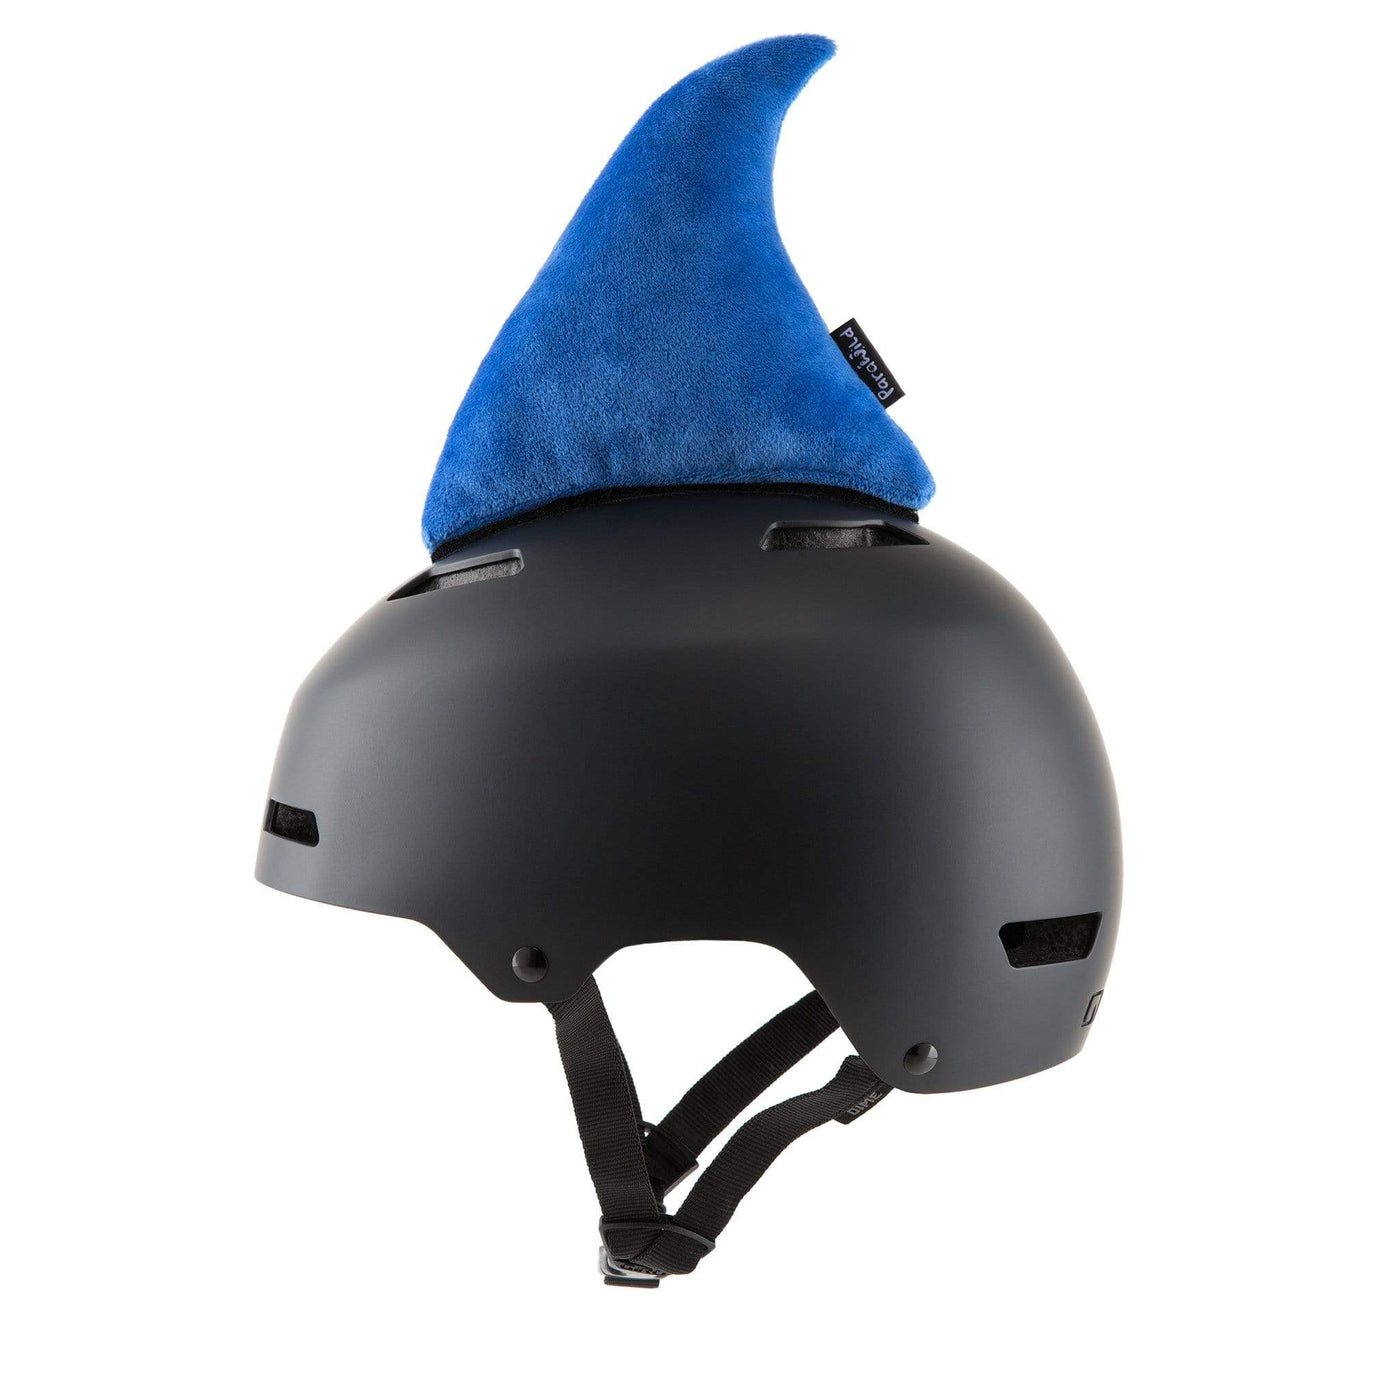 SnowKids Accessories Parawild Shaka the Shark Helmet Fin